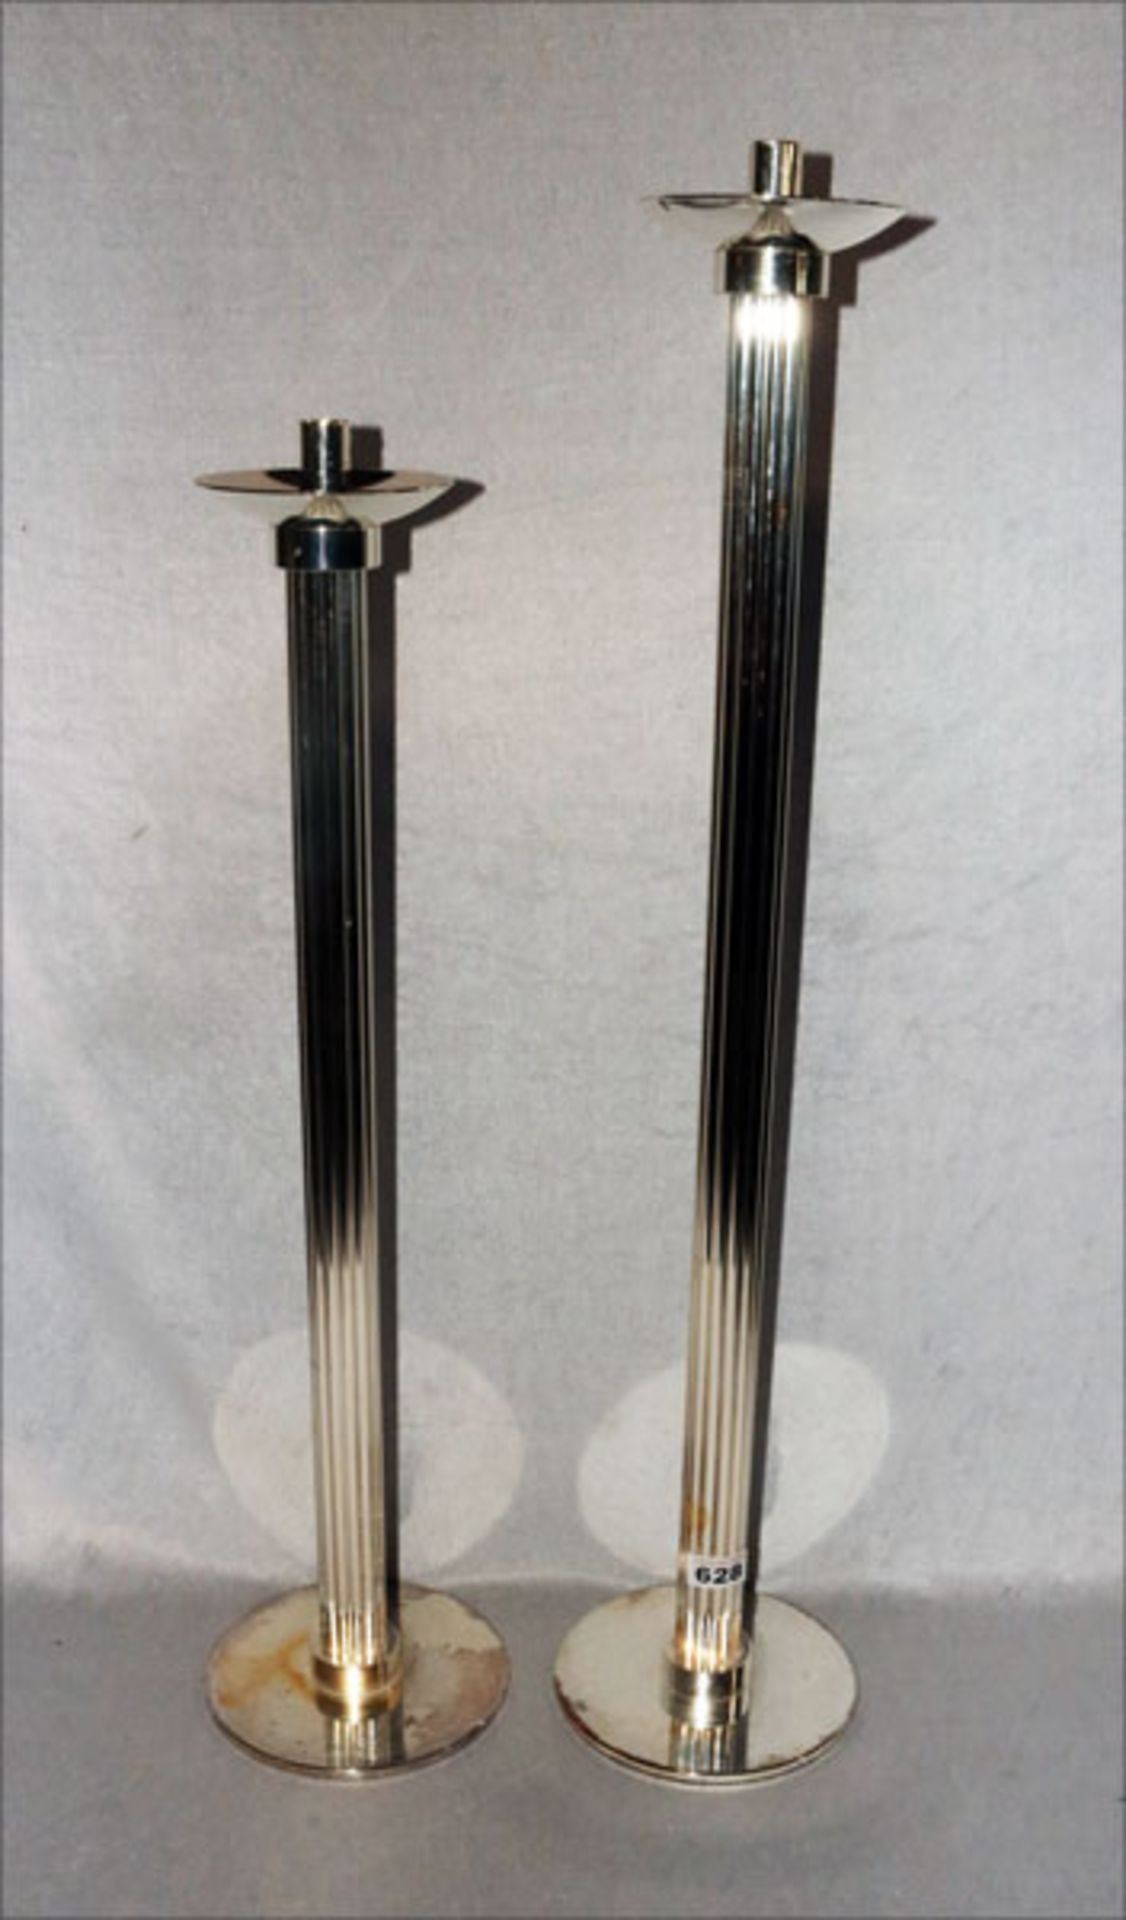 2 Metall Kerzenleuchter in gerillter Form, H 74/84 cm, Gebrauchsspuren, fleckig